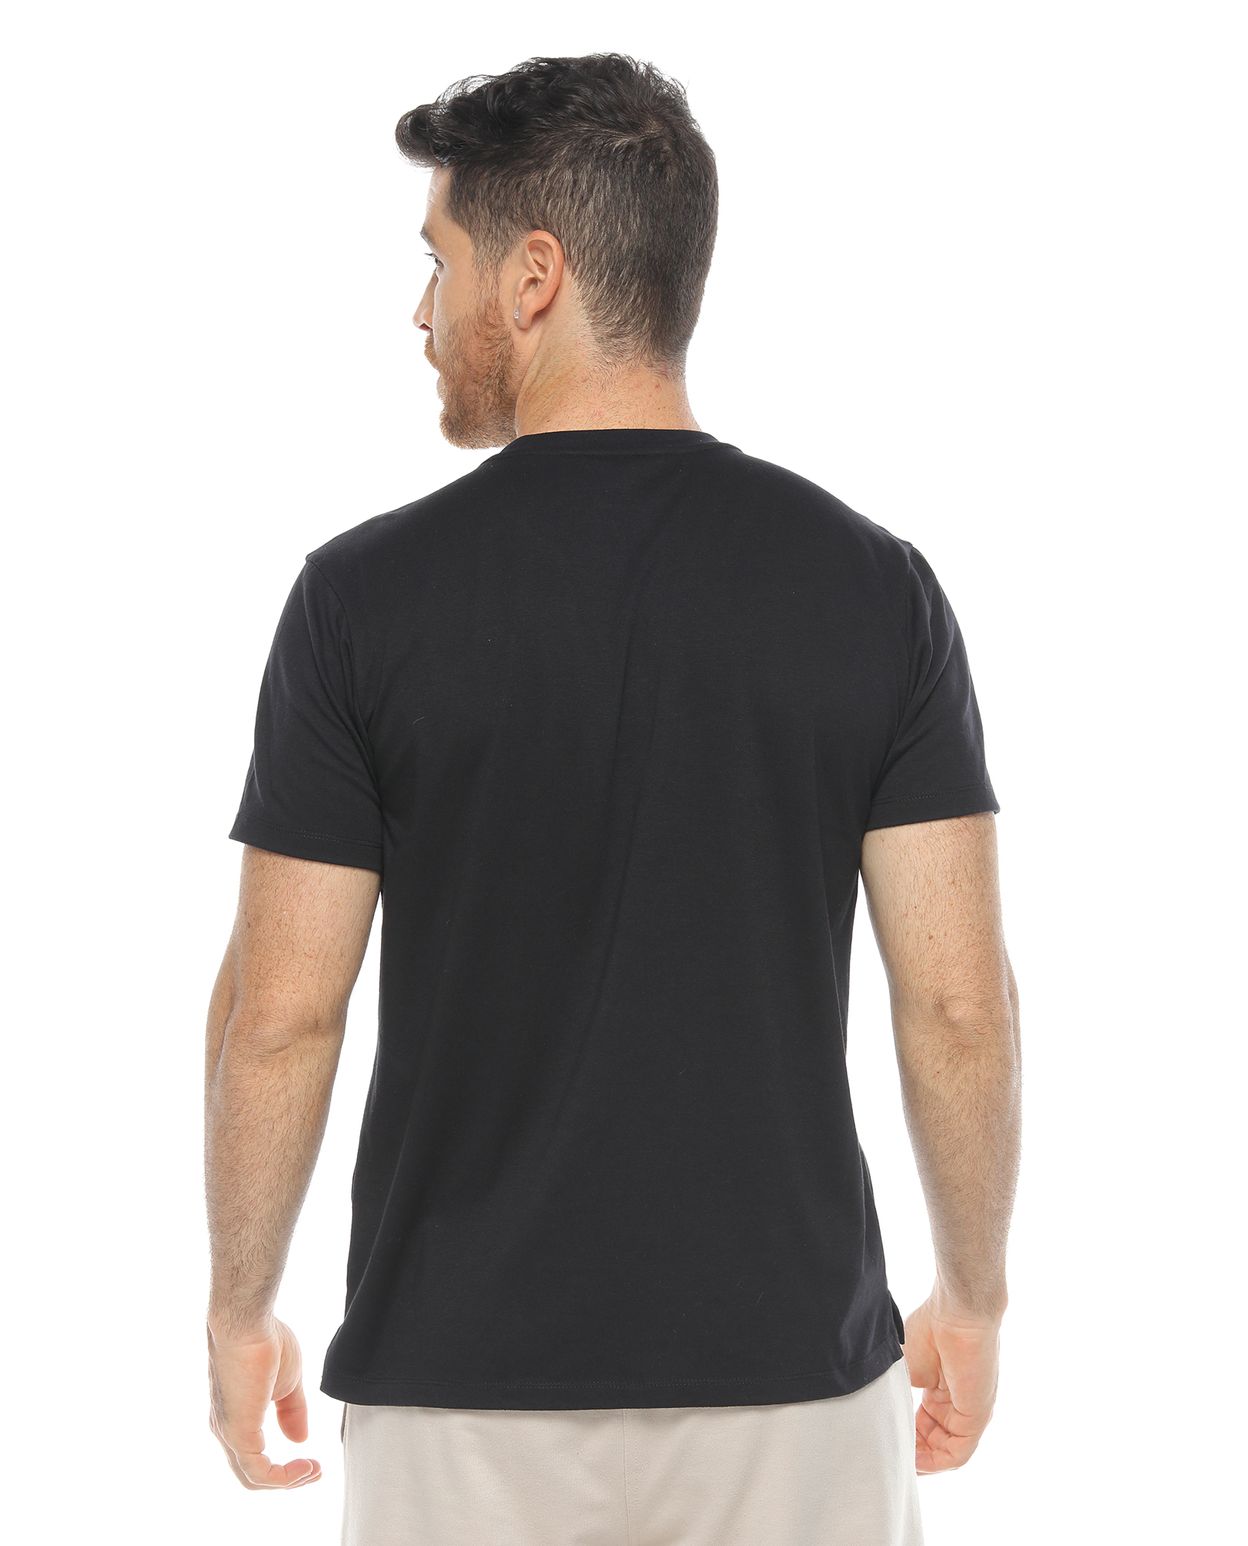 camiseta estampada para hombre color negra parte trasera